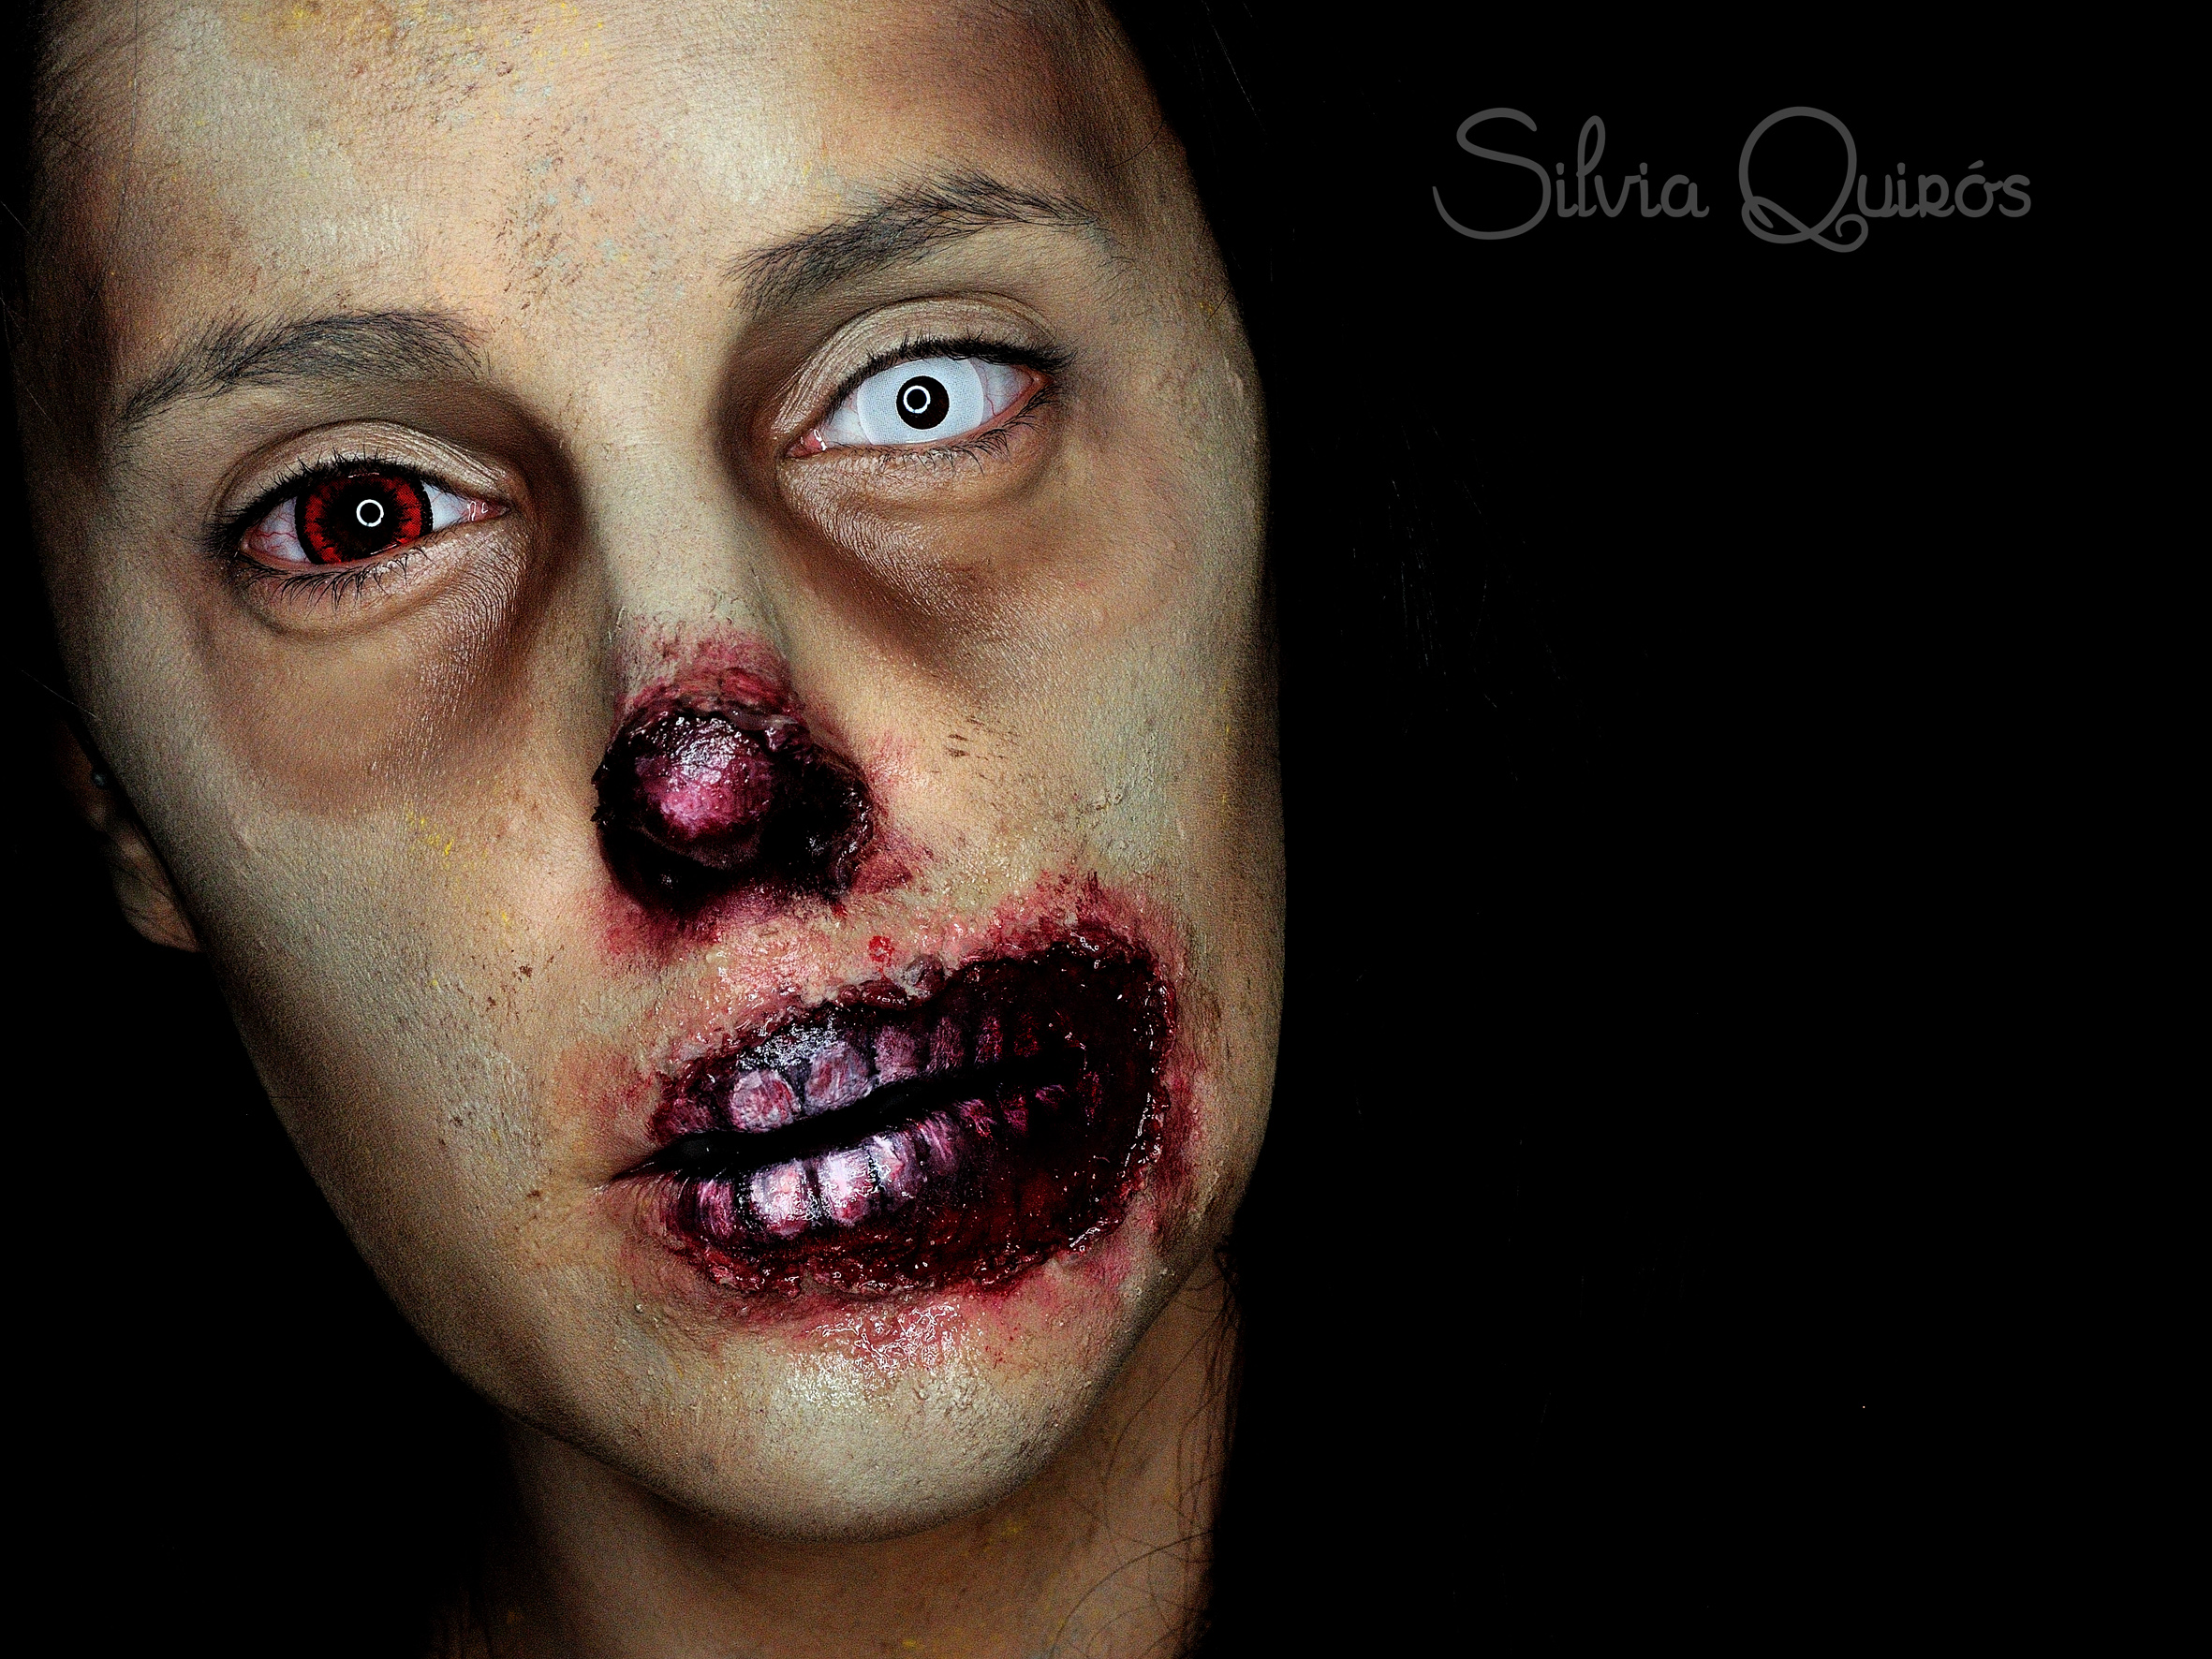 Maquillaje zombie sin nariz